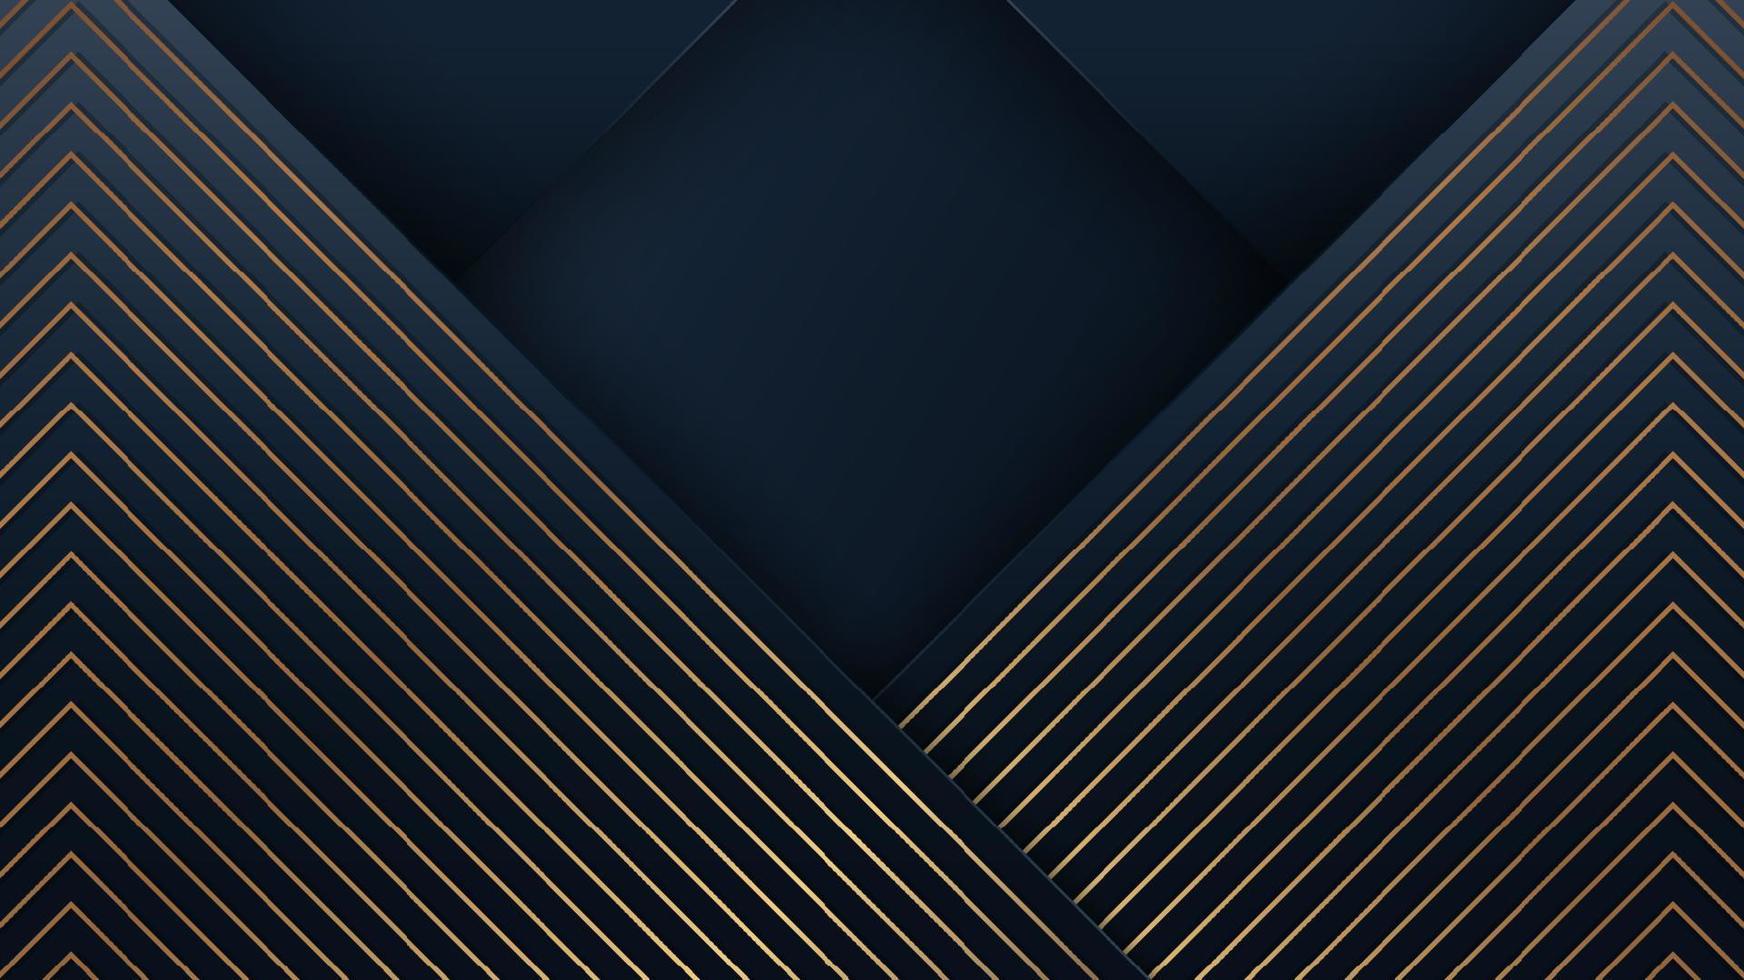 fond de luxe moderne abstrait rayures bleues avec motif de lignes diagonales dorées vecteur